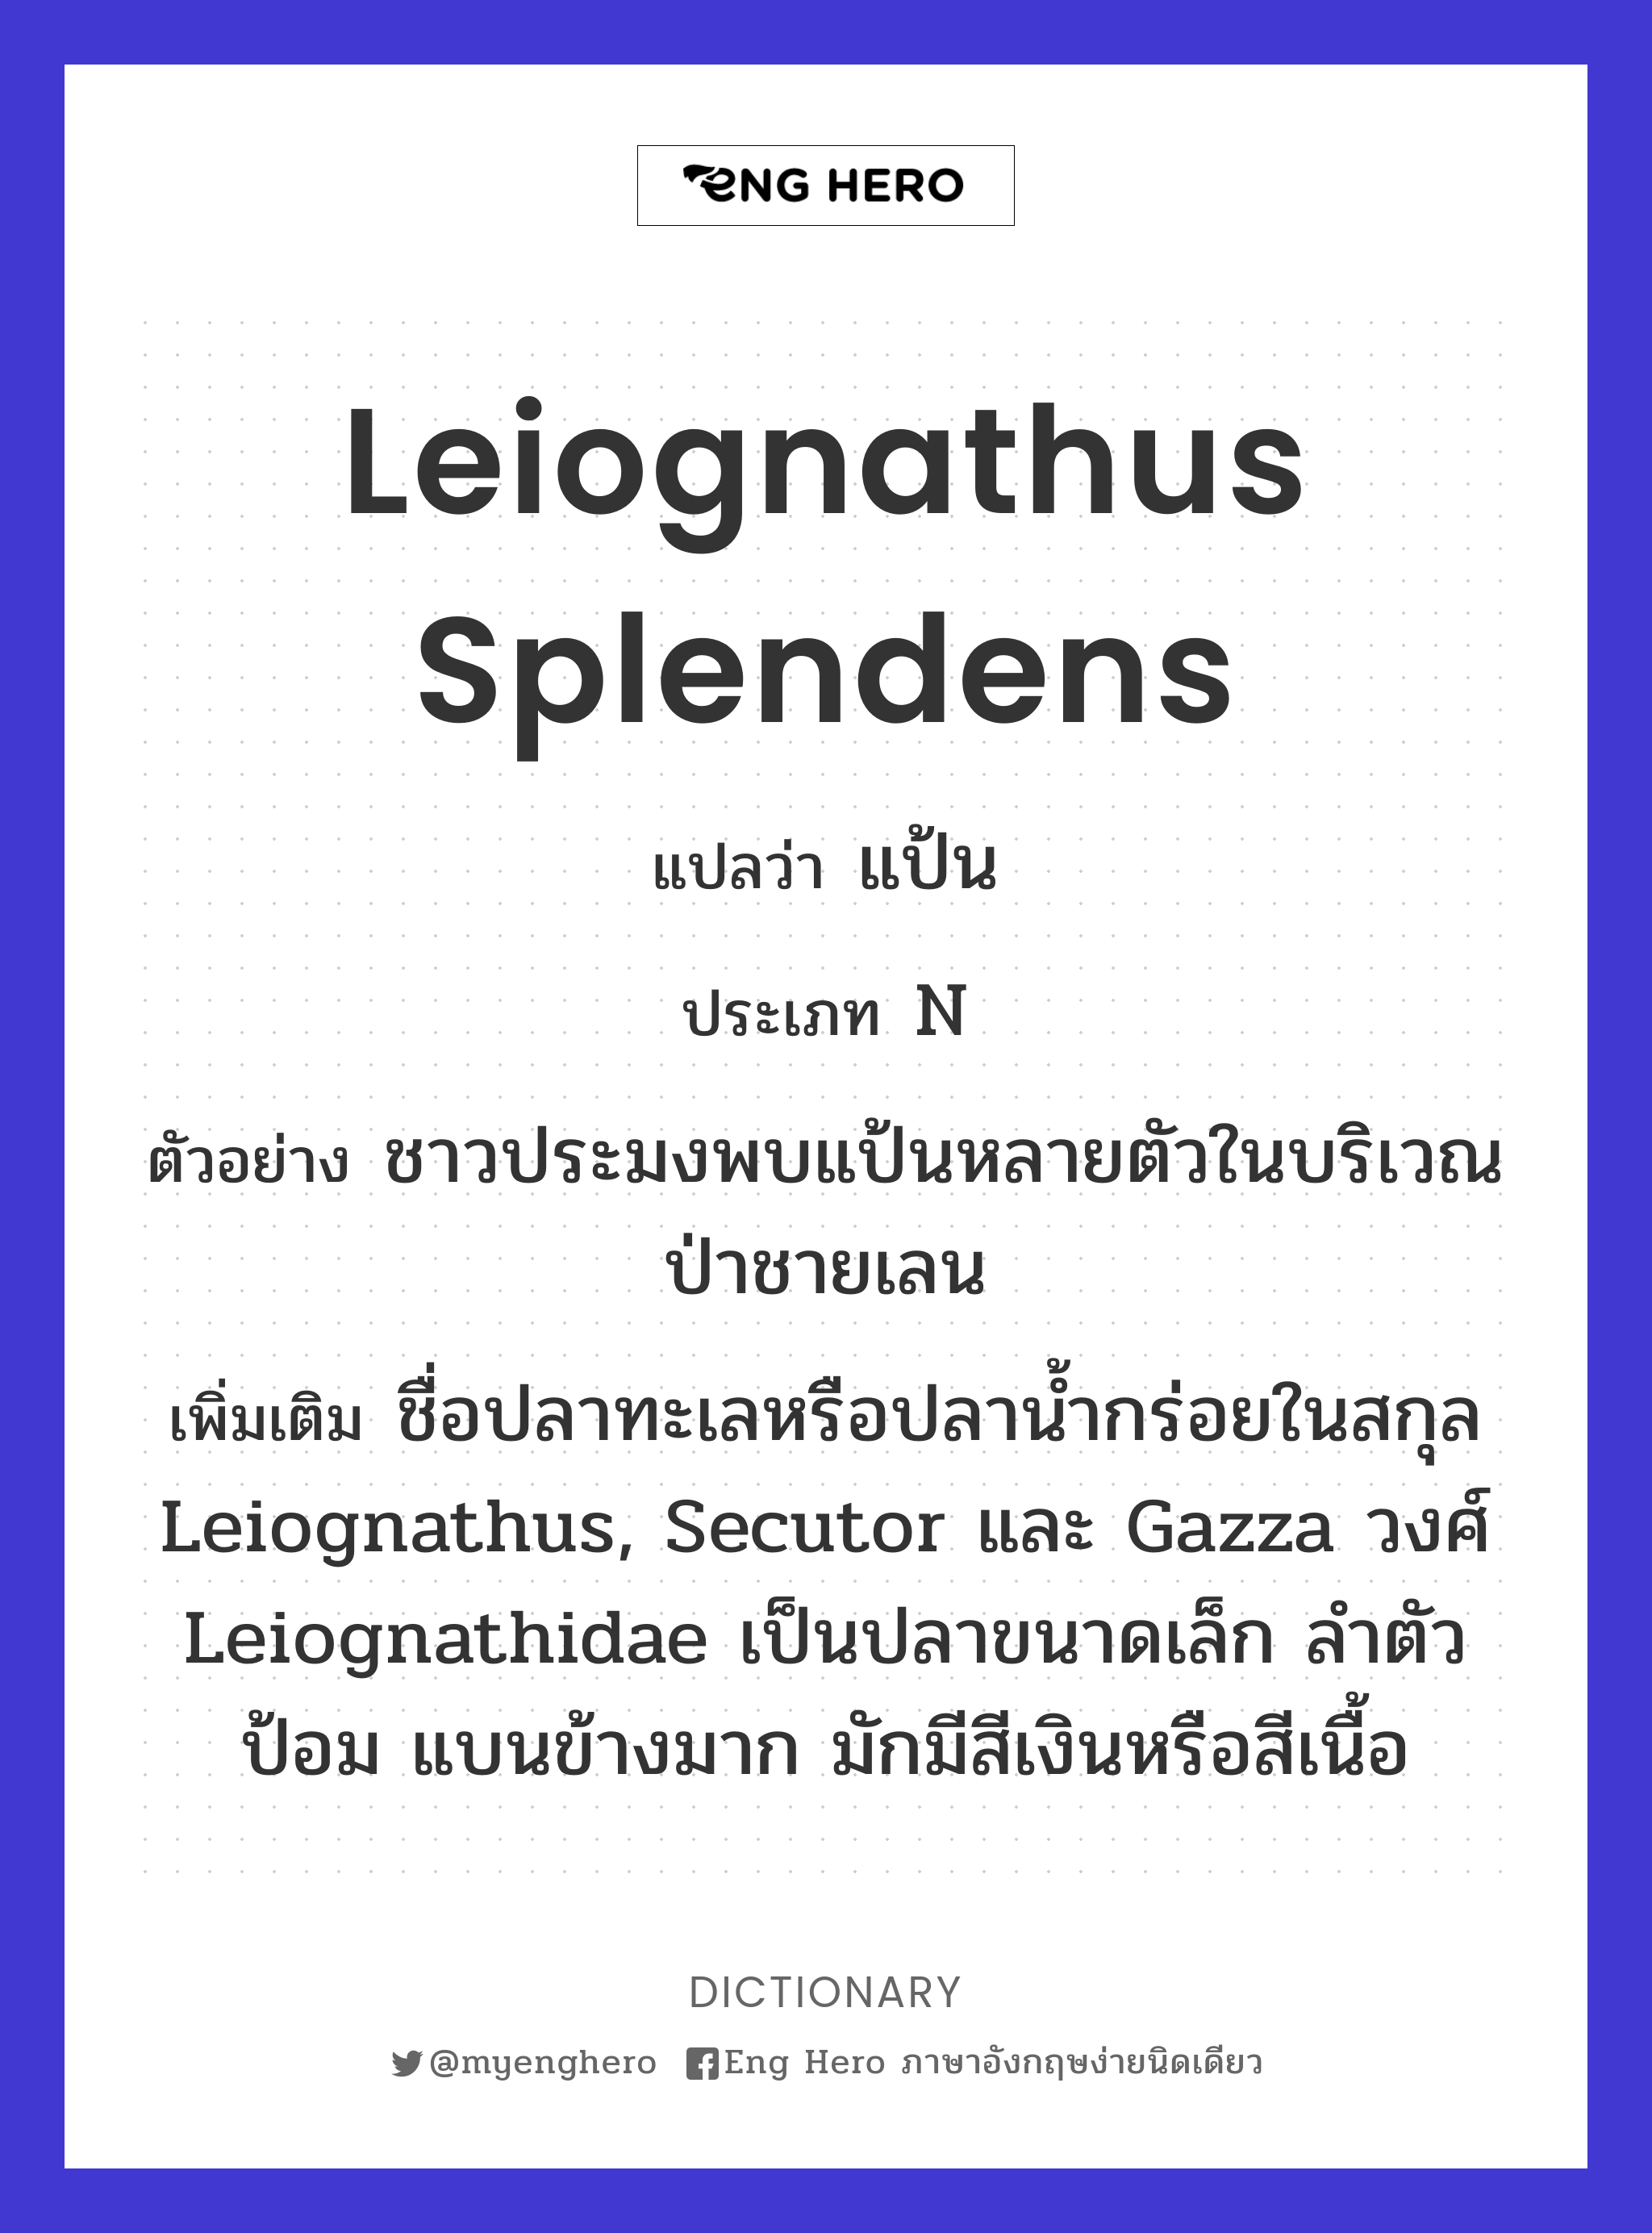 Leiognathus splendens